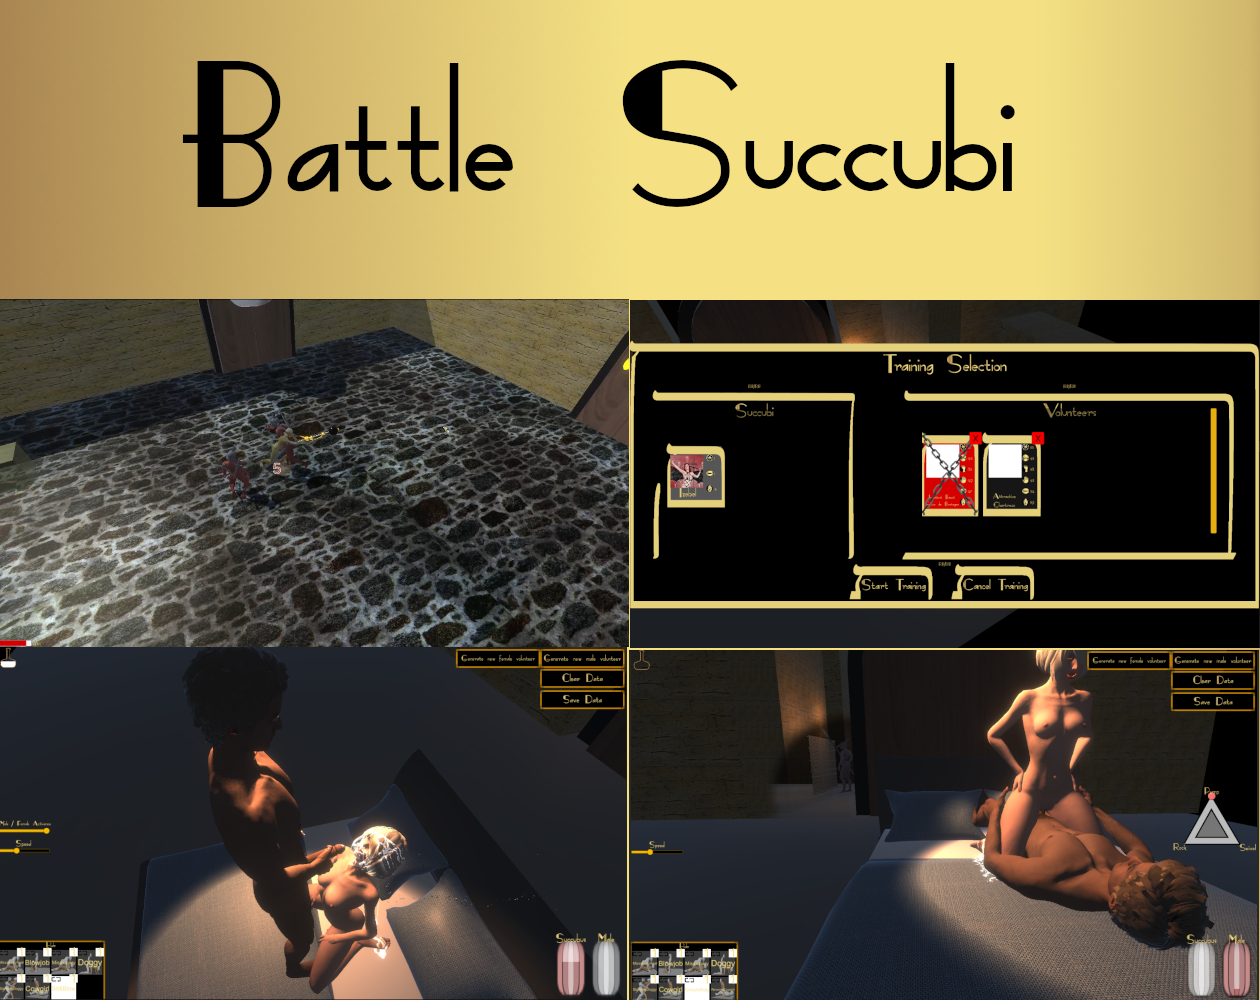 Battle Succubi